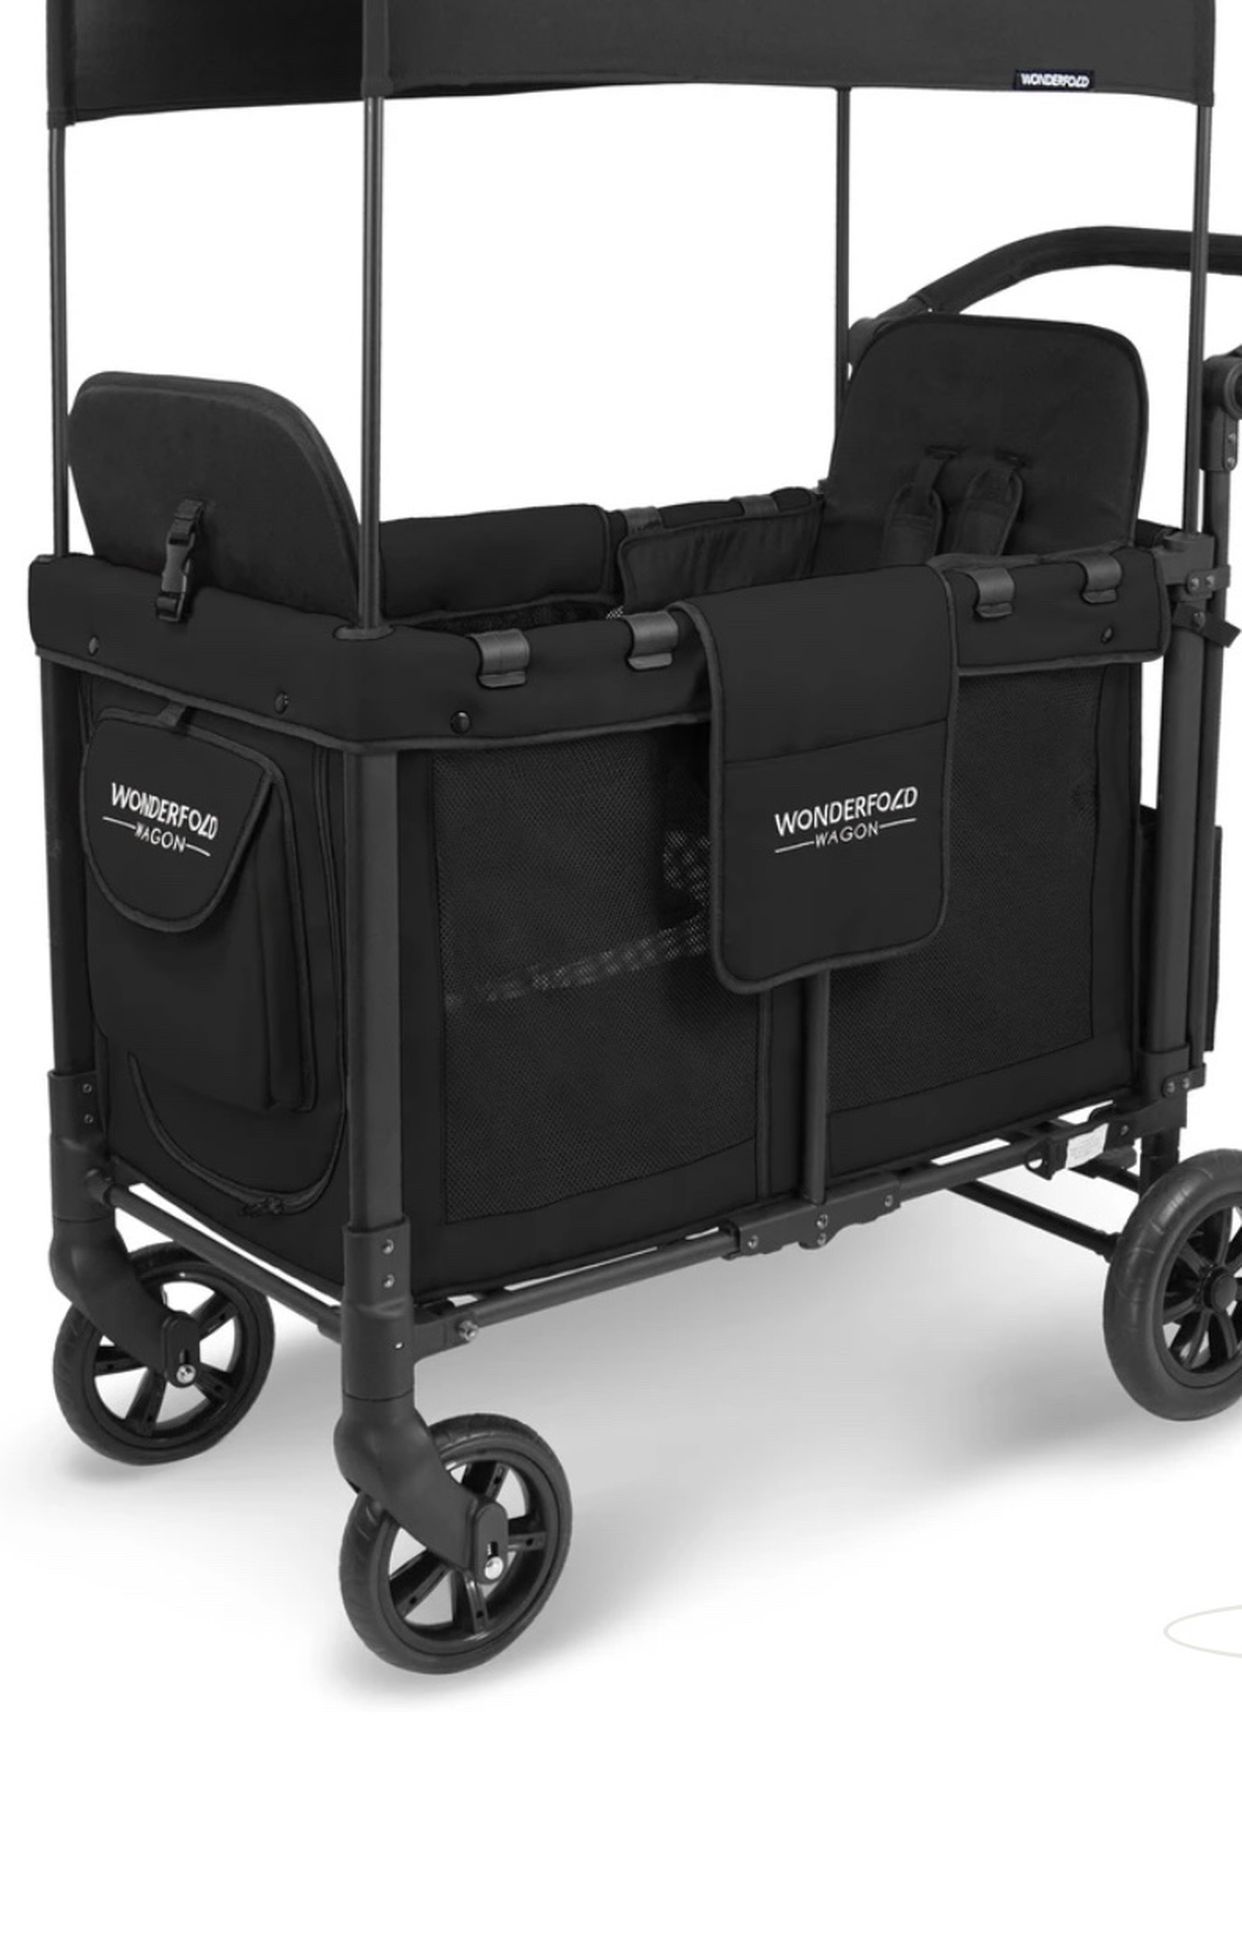 Twin/Double Stroller Wagon Wonderfold W2